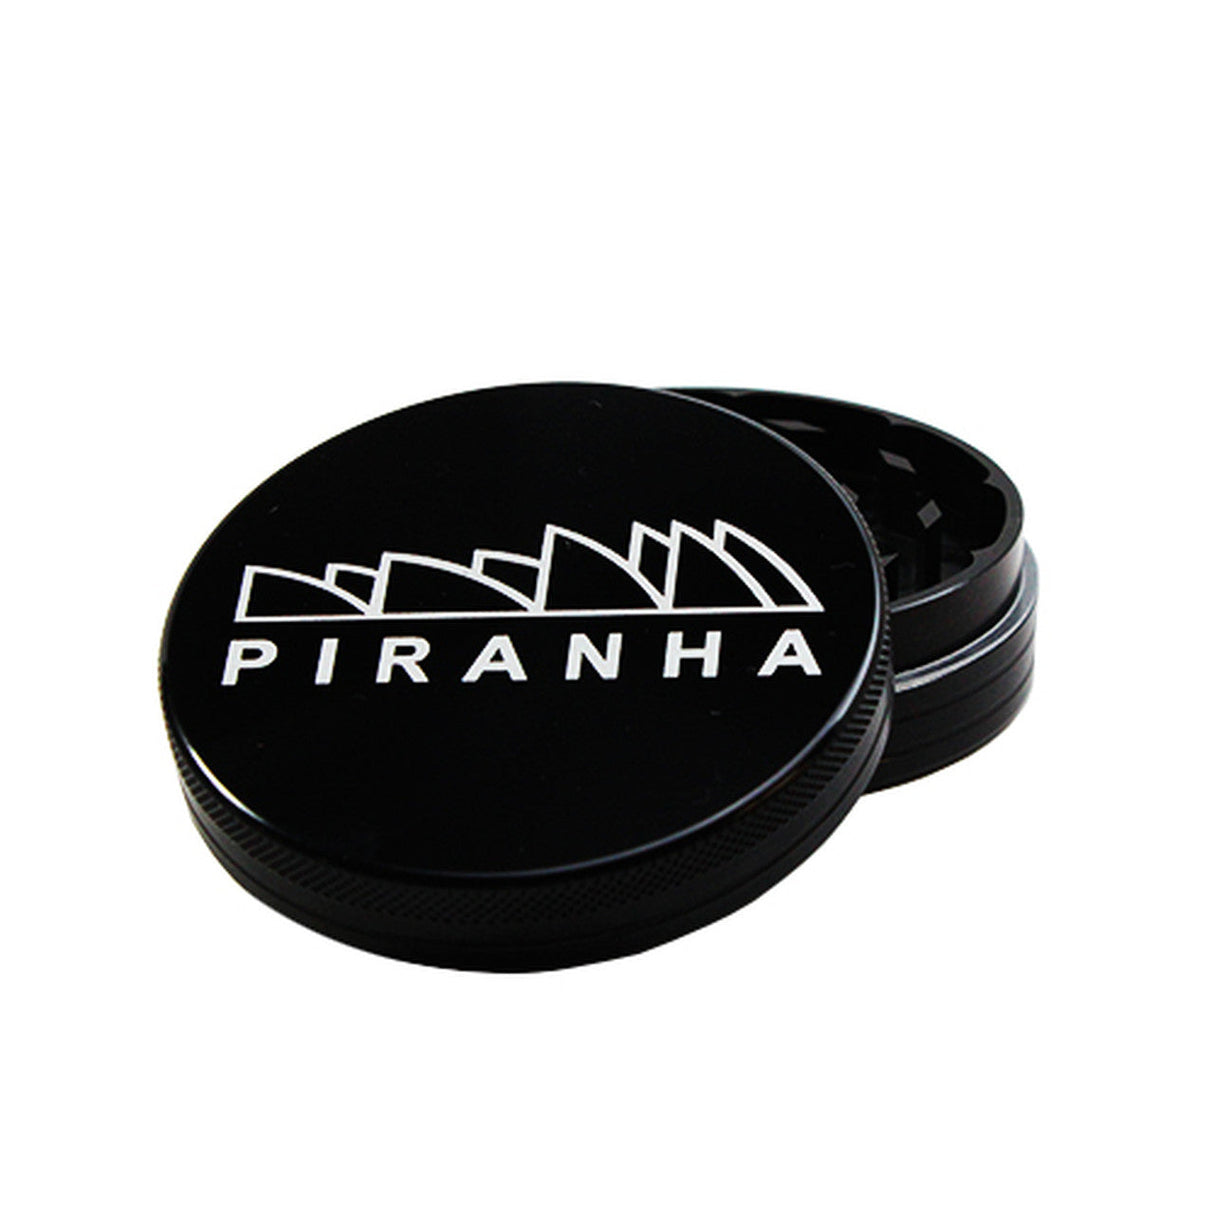 Piranha 2 Piece Black Aluminum Grinder, 3.0" Diameter, Front View on White Background